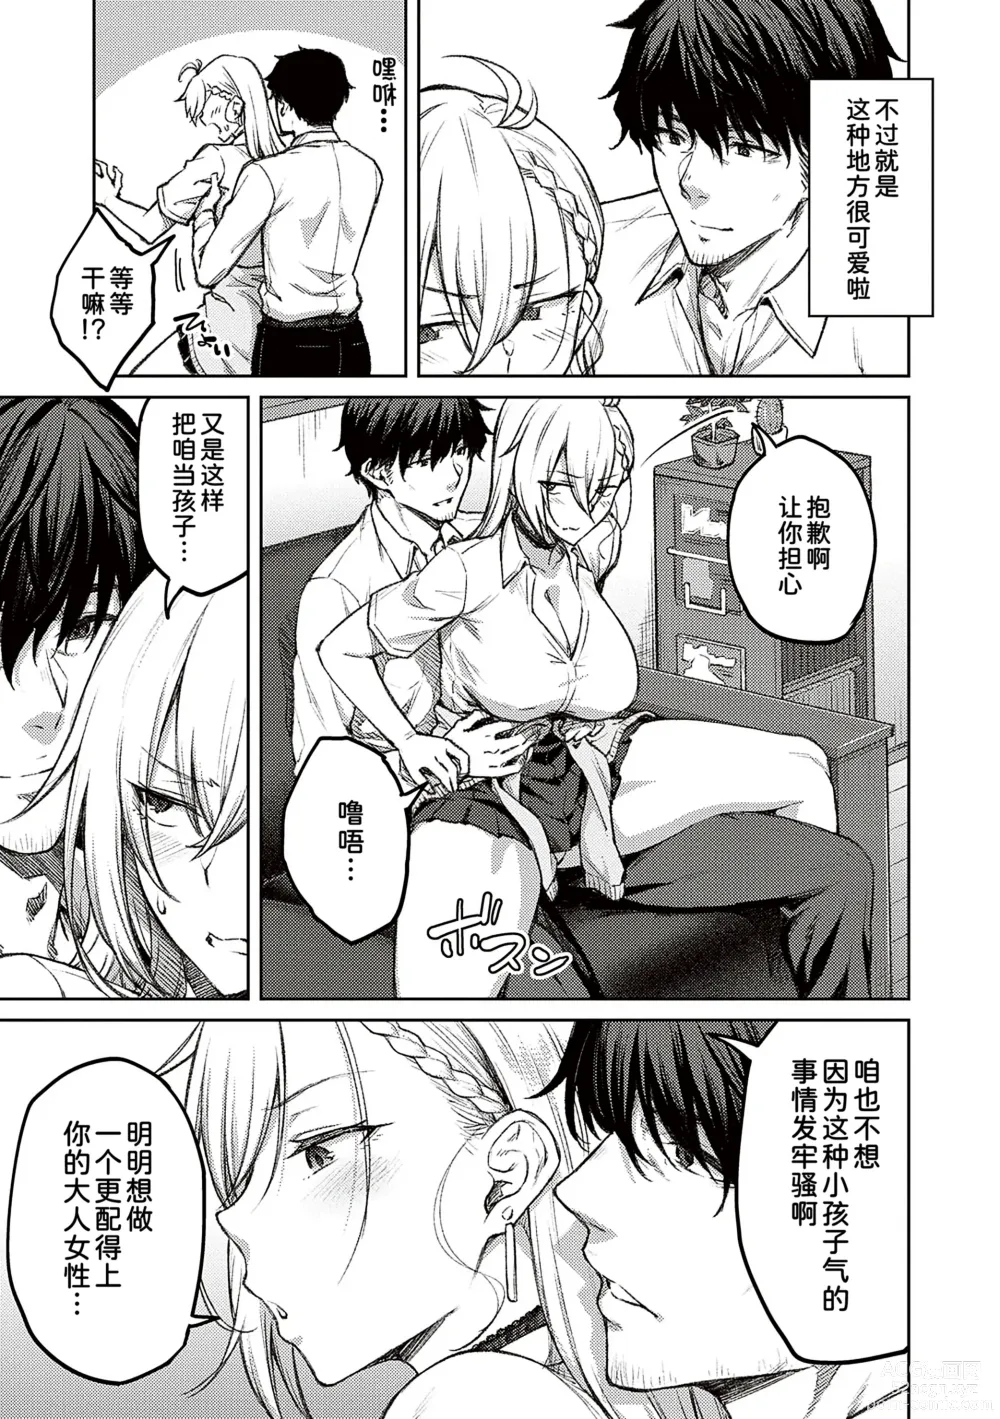 Page 9 of manga Honey Temptation